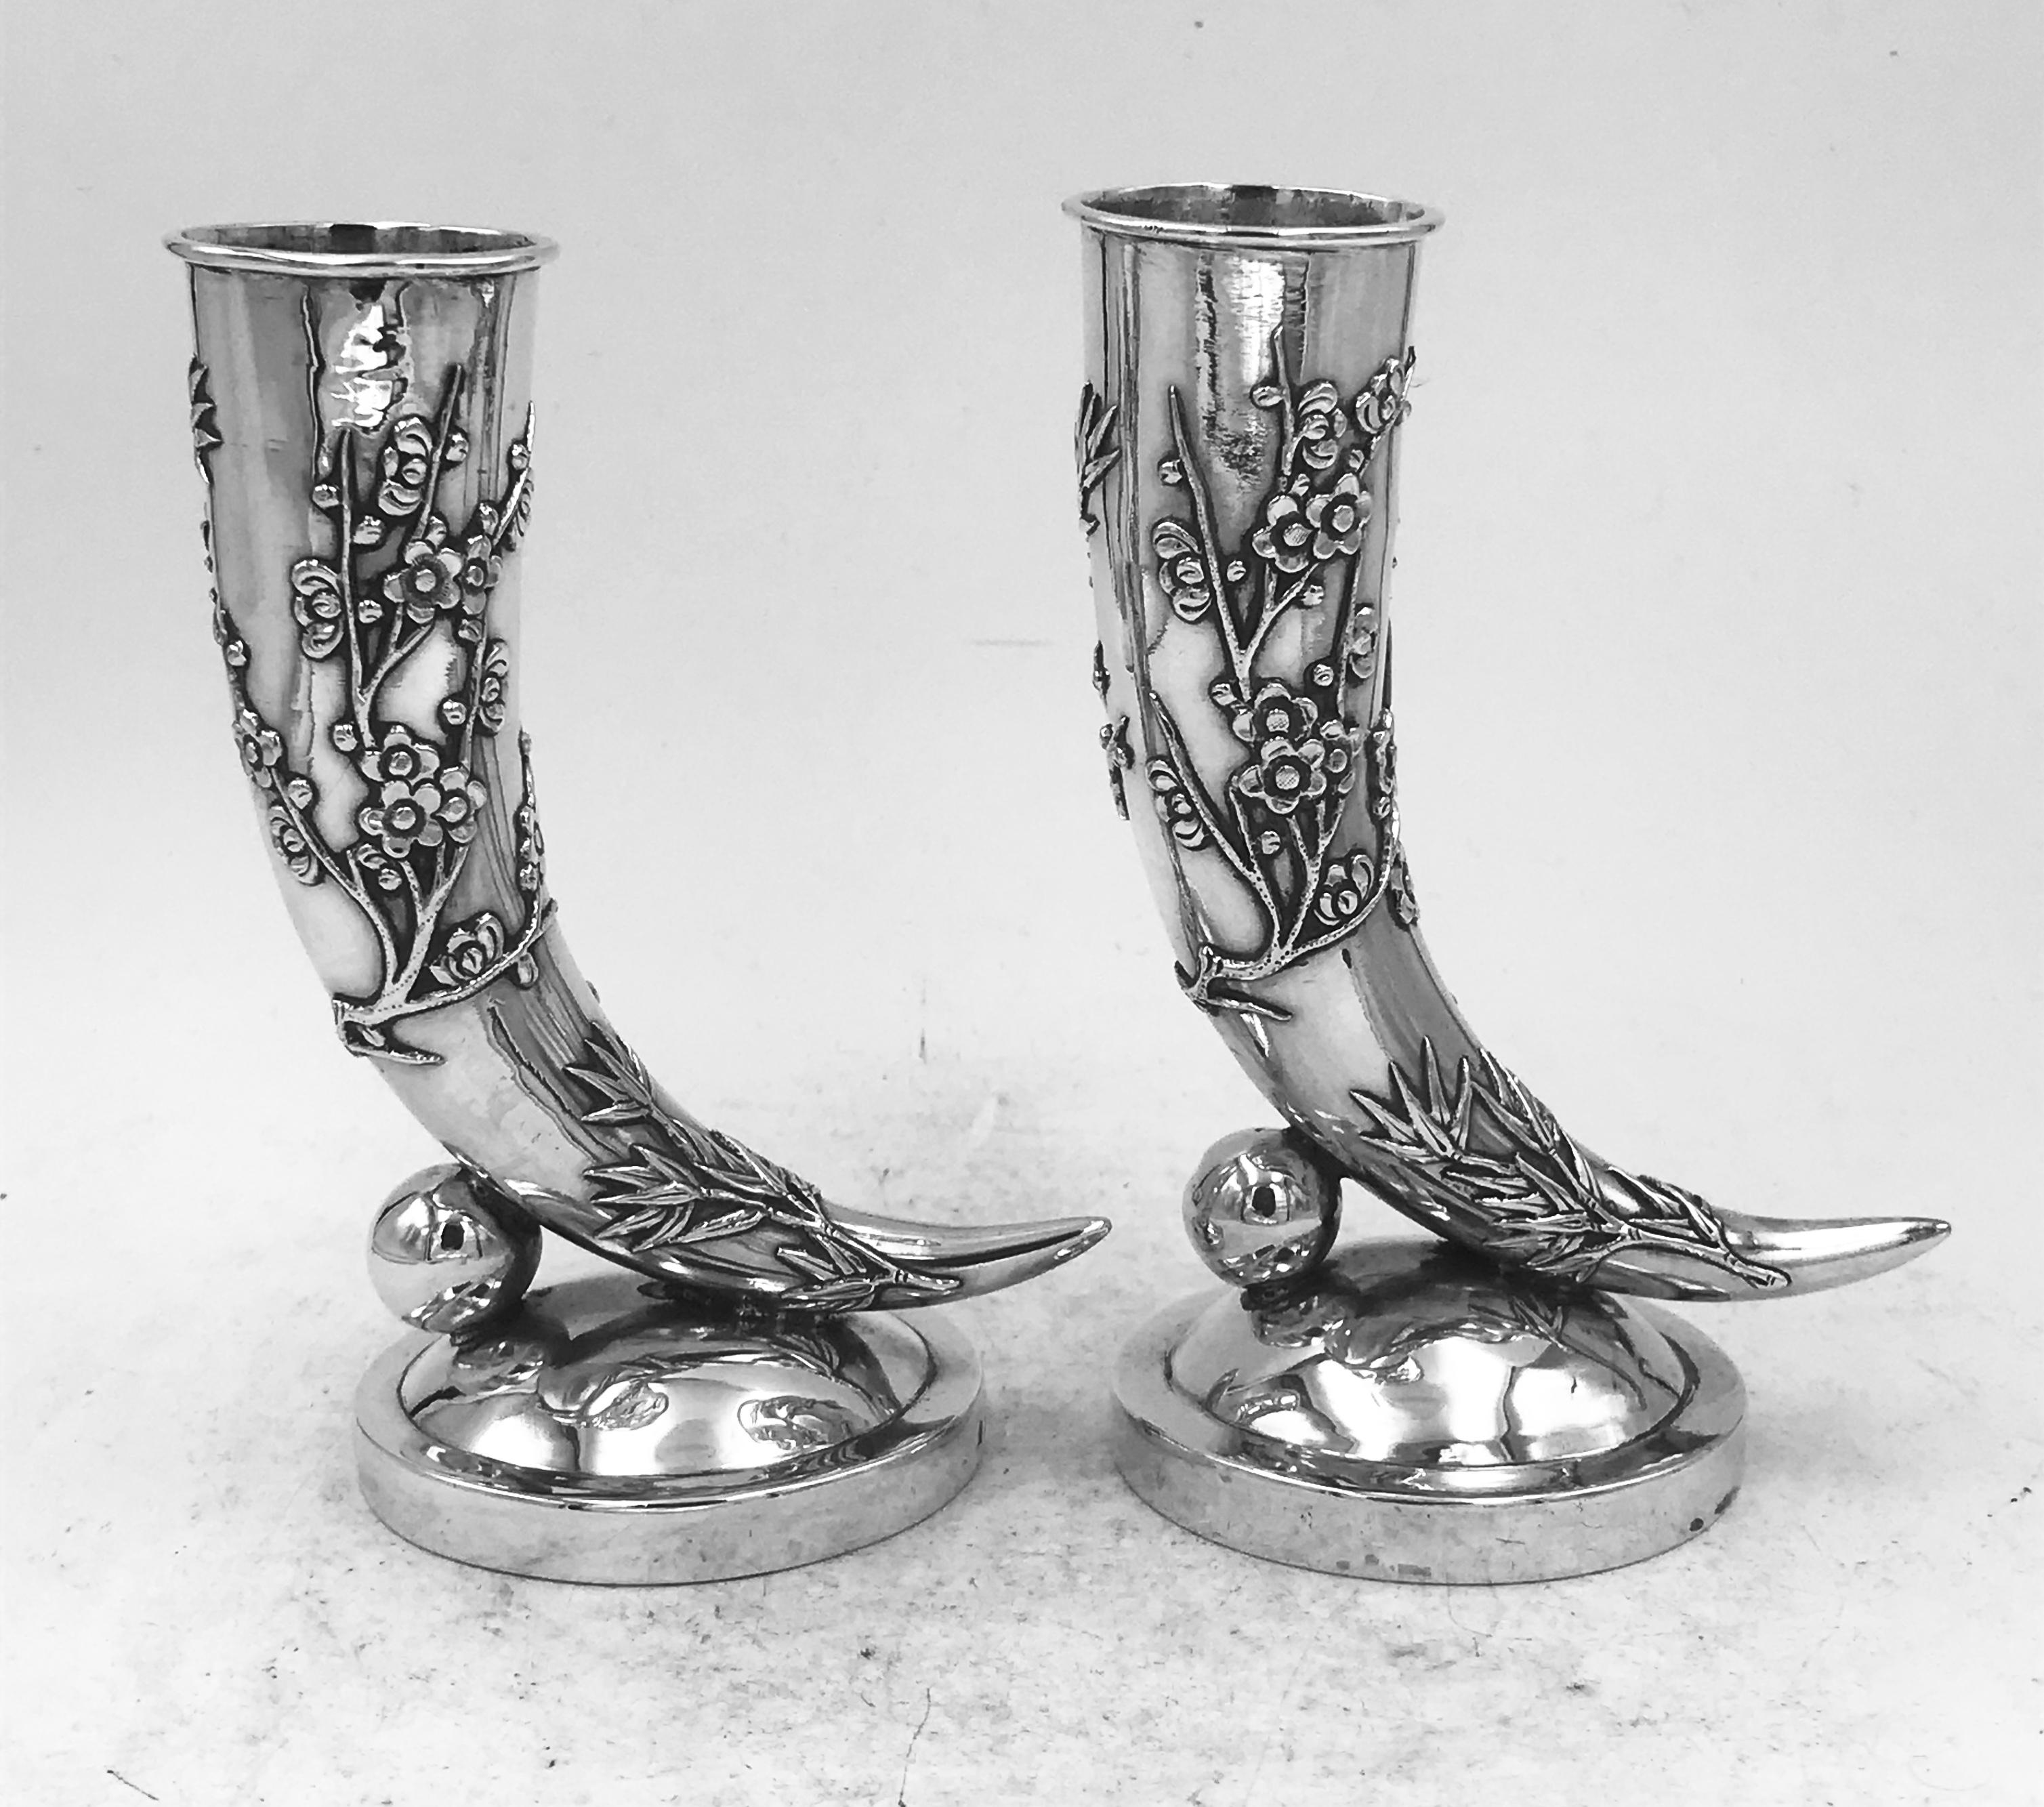 Zwei chinesische Silbervasen in Form eines Füllhorns, beide mit aufgelegtem Bambus und Chrysanthemen verziert und auf einem runden Sockel. Die Vasen sind ähnlich, wurden aber von verschiedenen Silberschmieden hergestellt und von verschiedenen